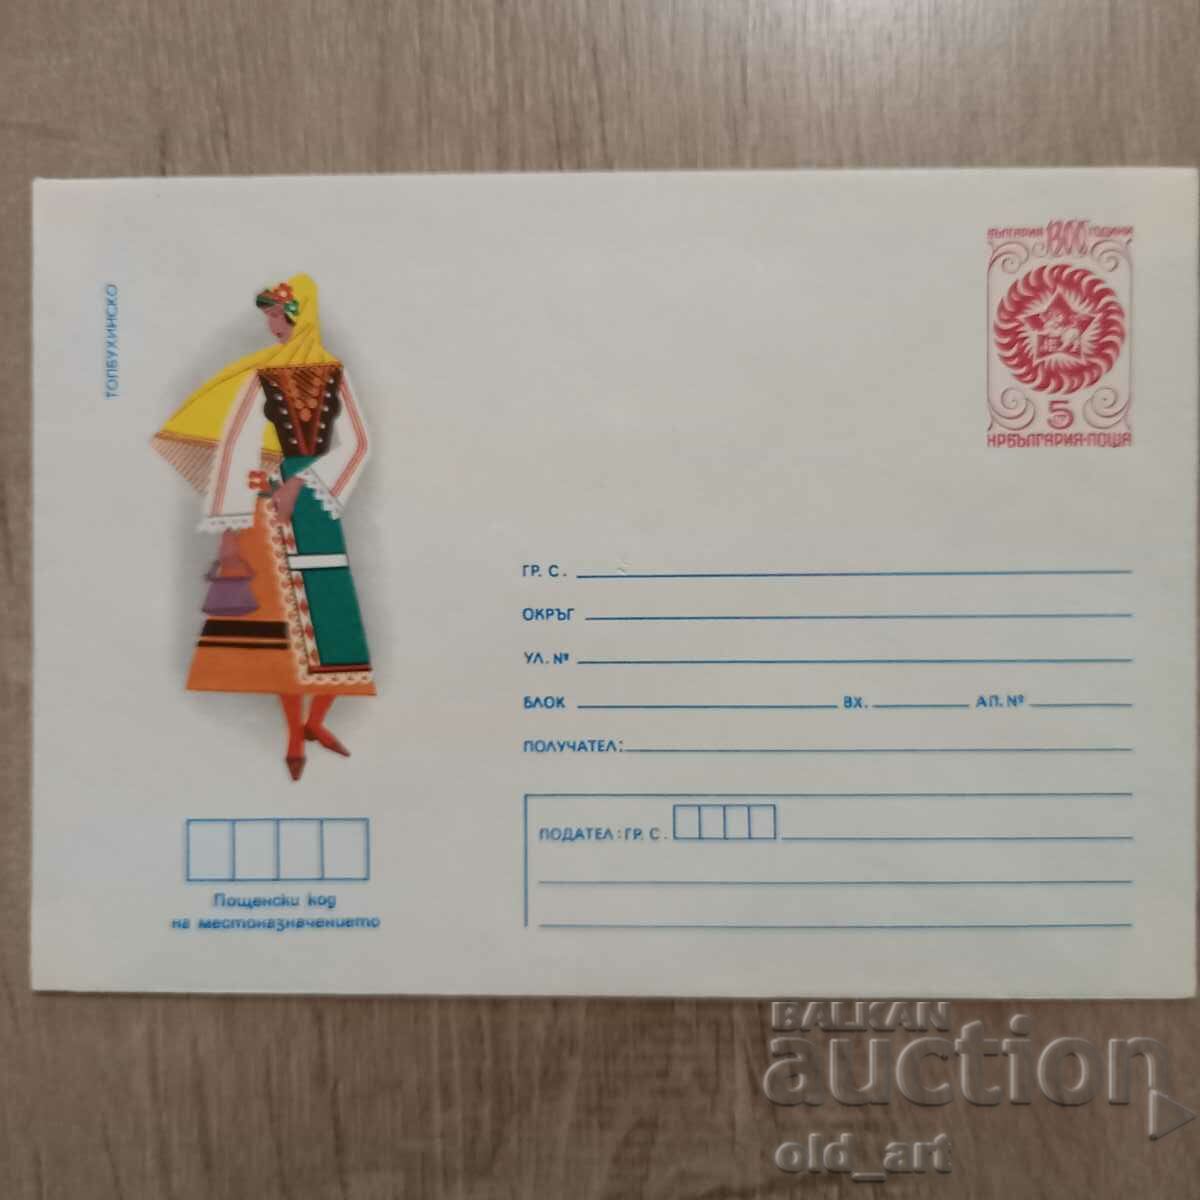 Ταχυδρομικός φάκελος - Λαϊκές φορεσιές - Tolbukhinsk